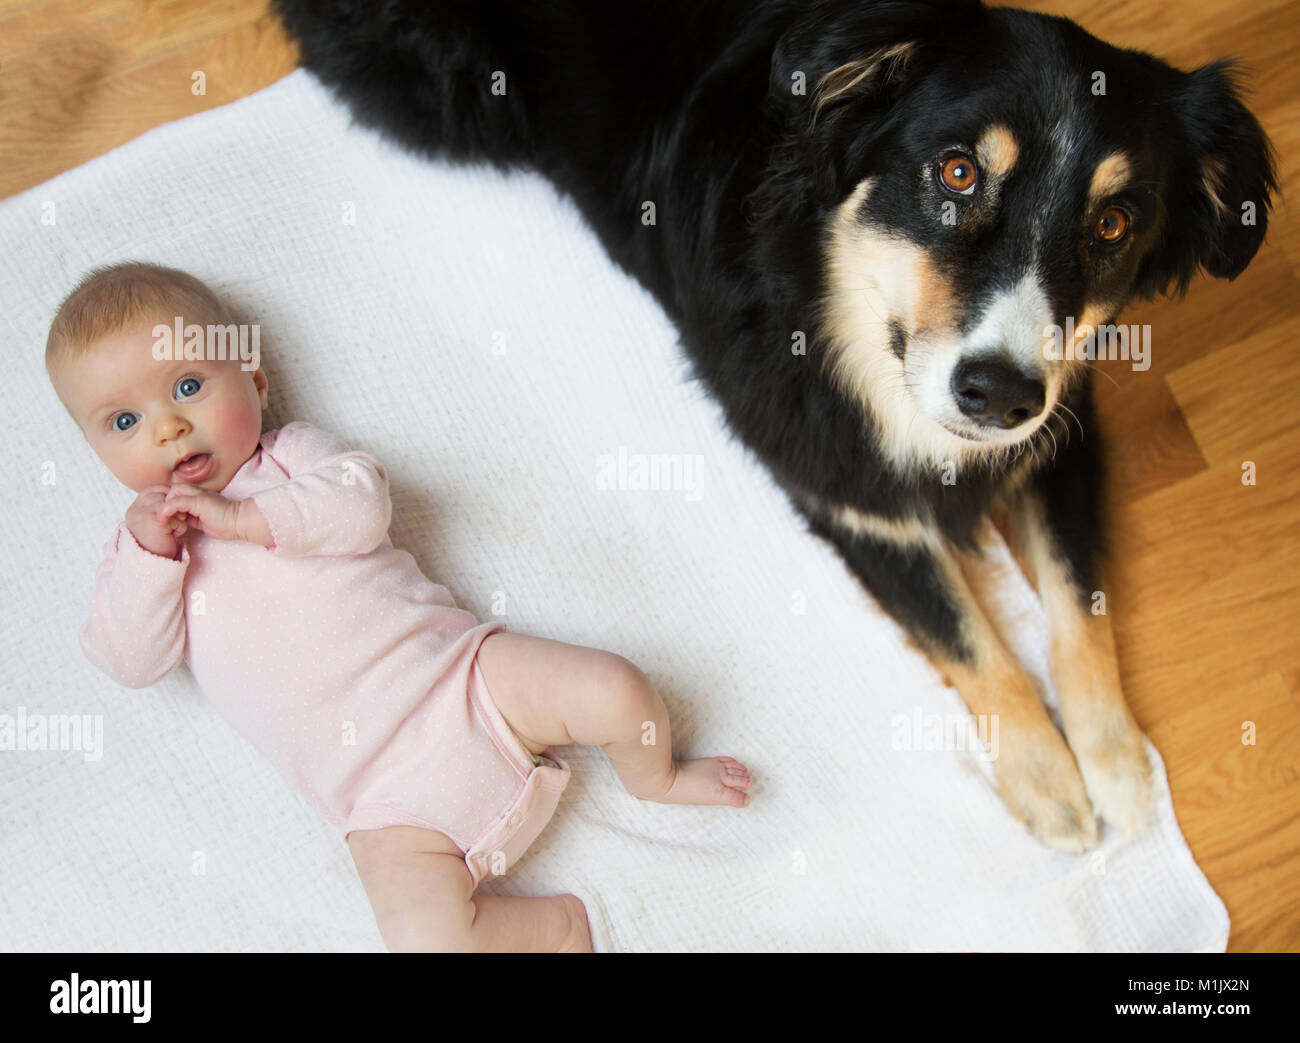 Elevato angolo di visione del bambino e cane la posa sul pavimento Foto Stock